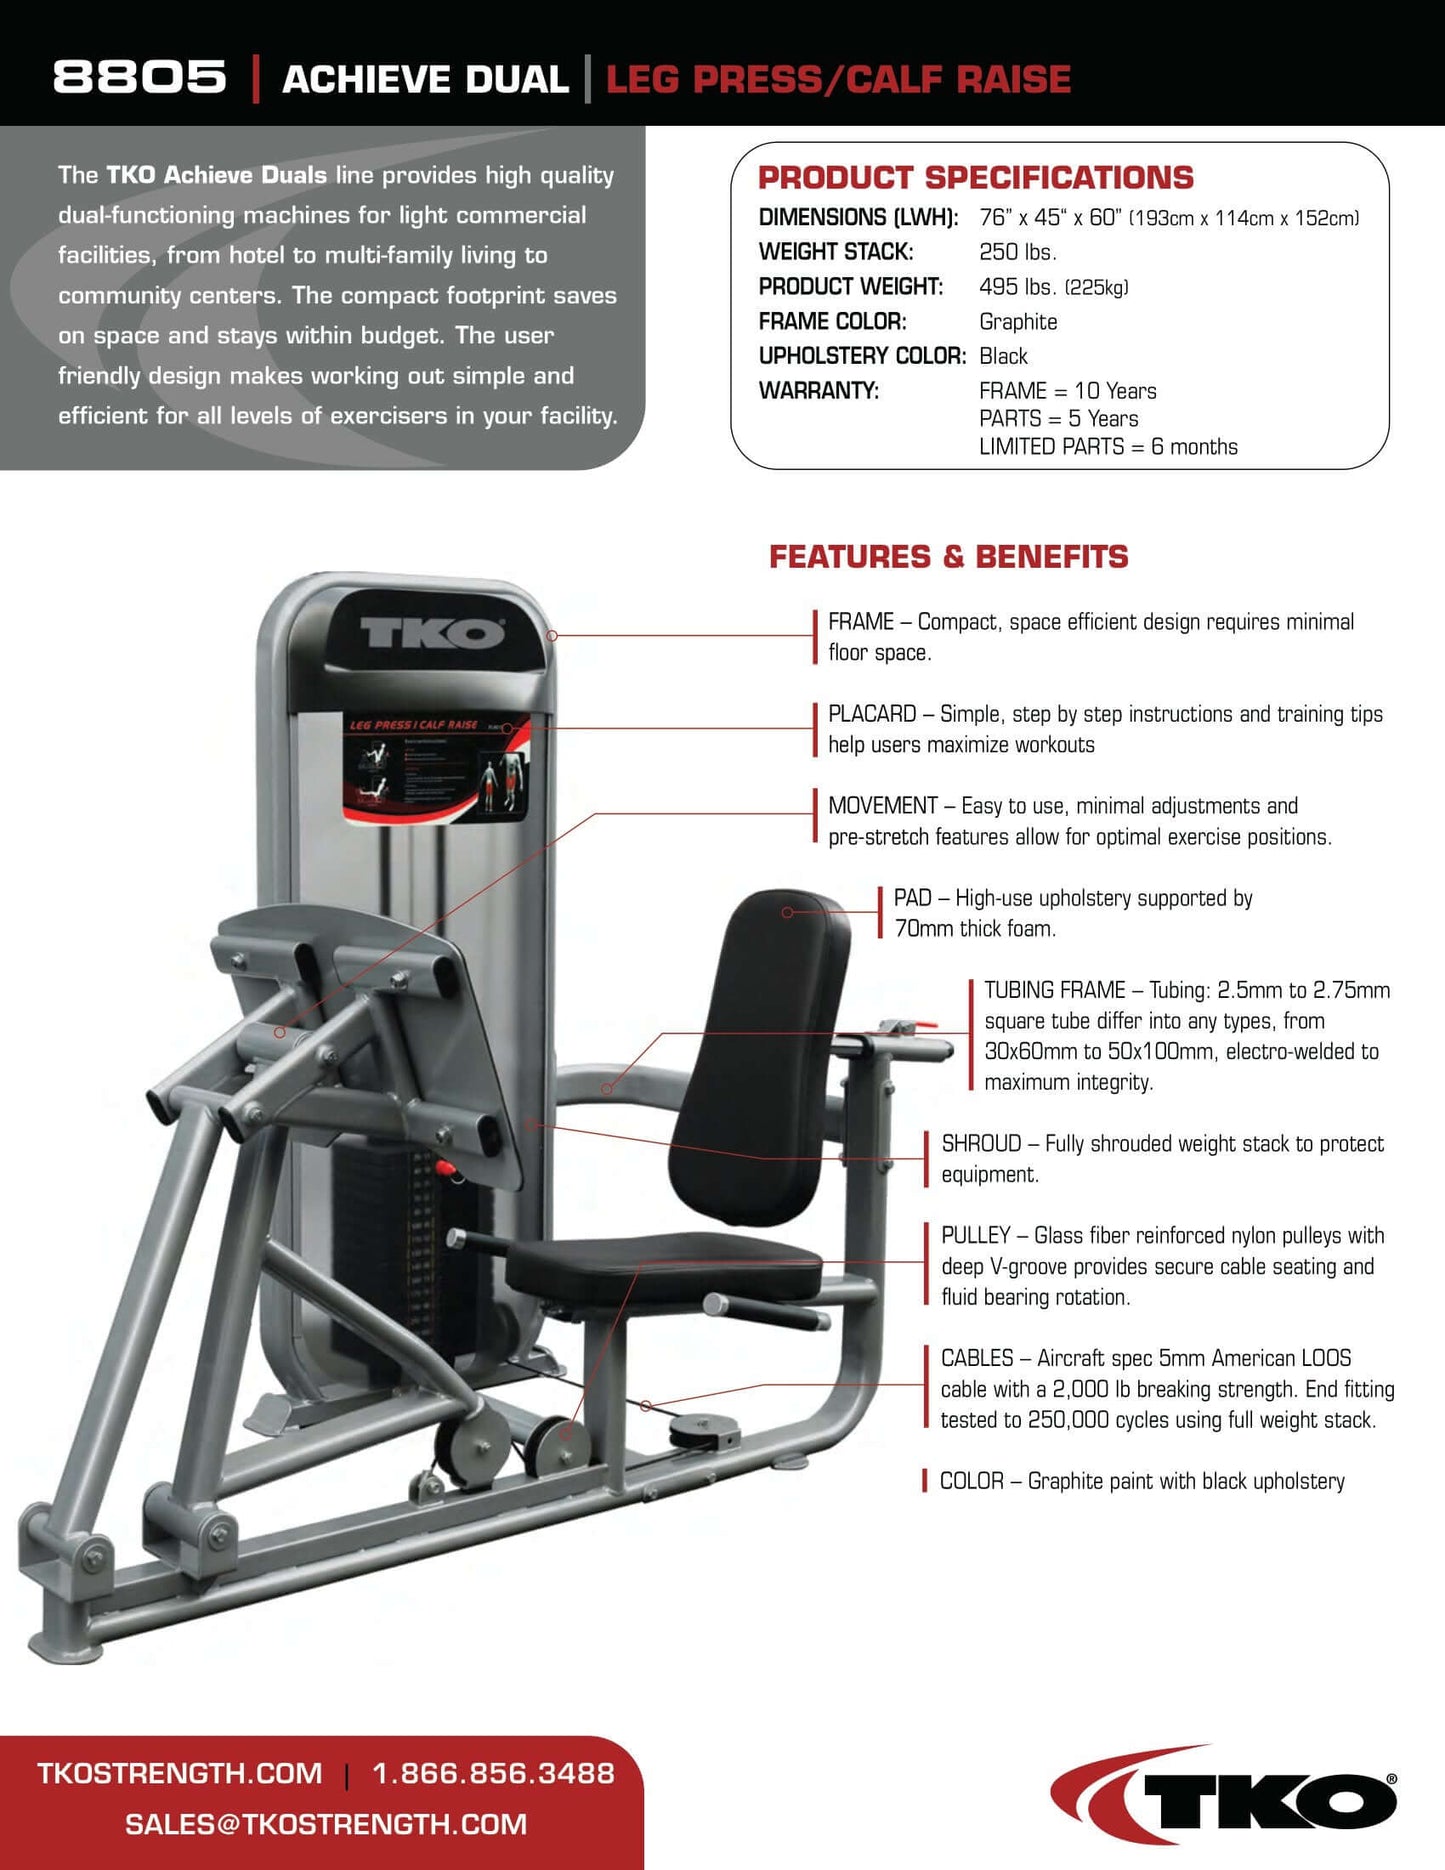 TKO Achieve Dual Leg Press / Calf Raise Machine 250 lb Weight Stack